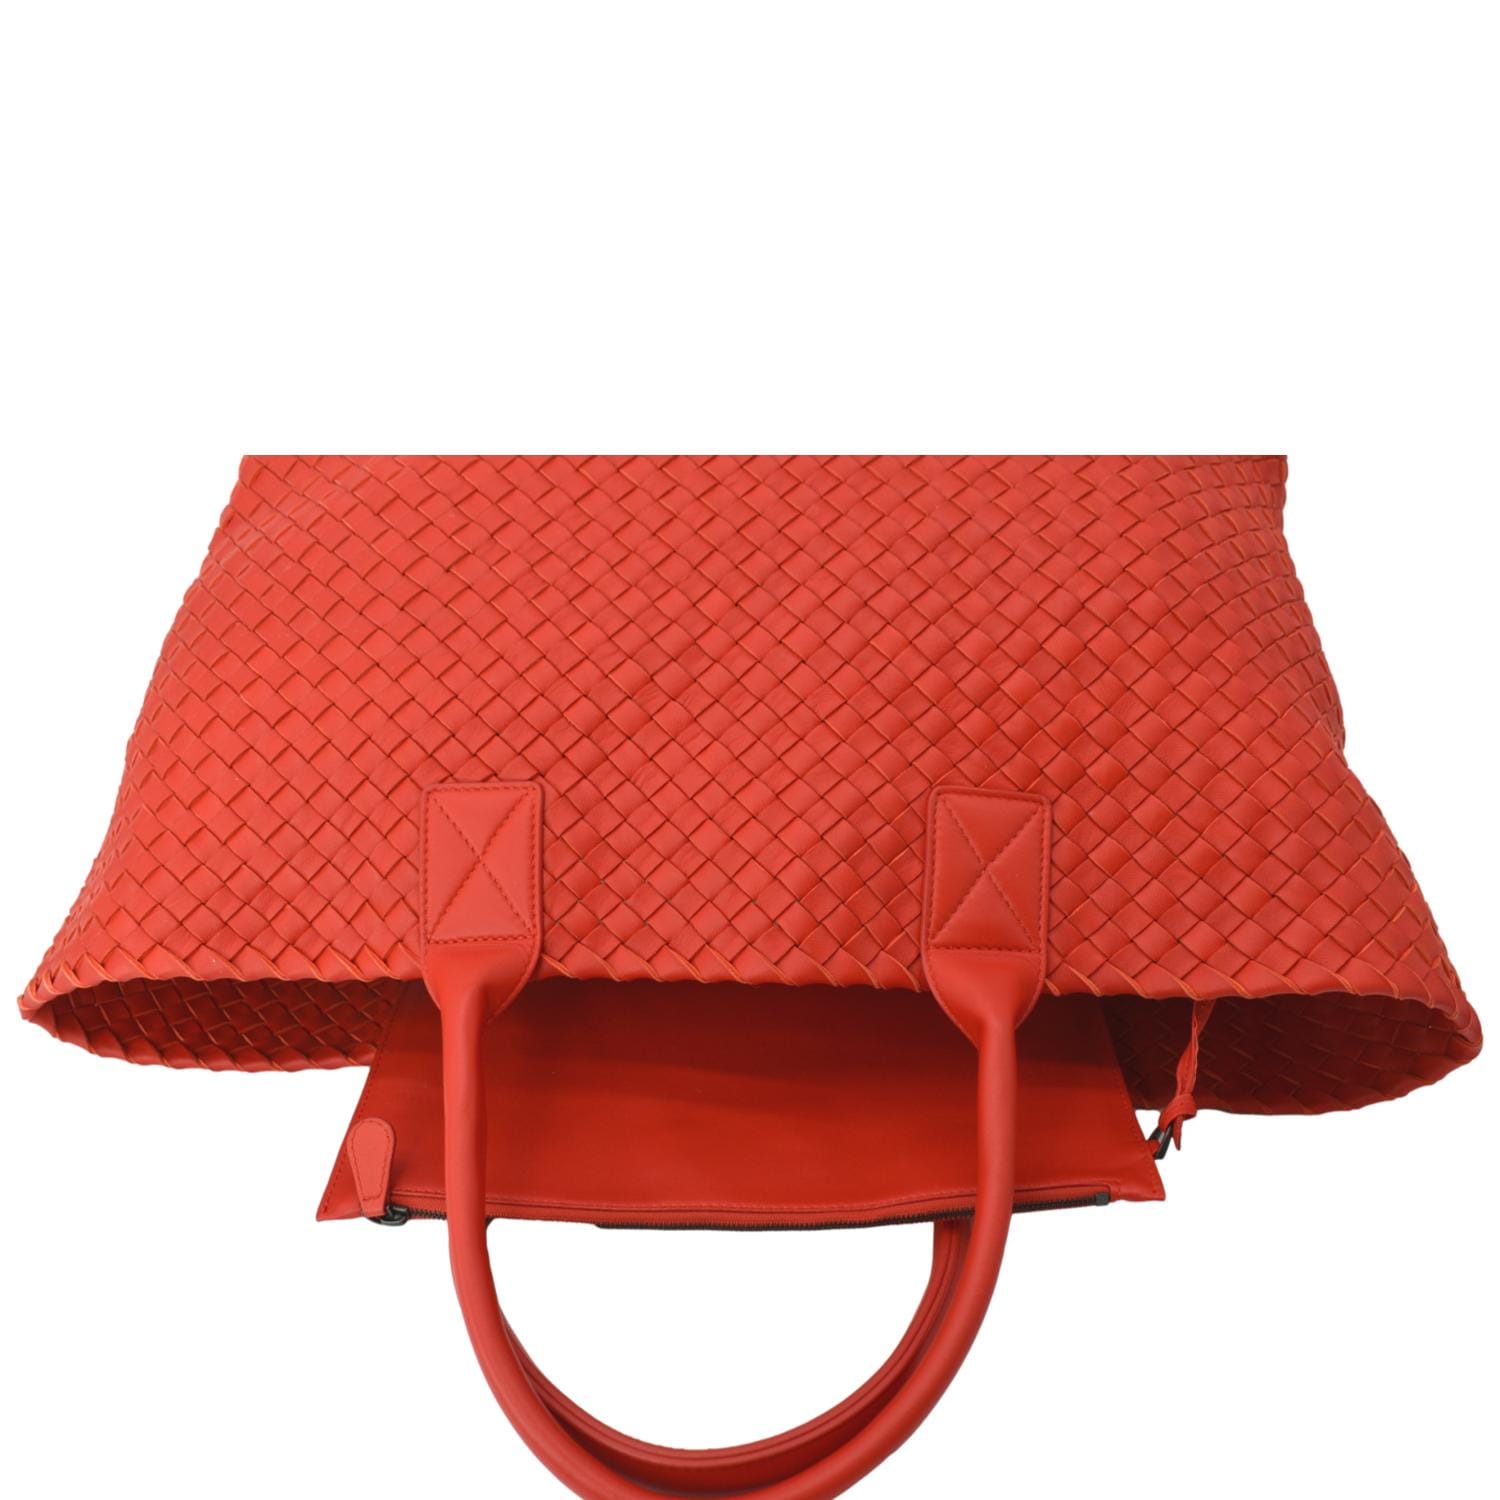 Bottega Veneta - Intrecciato leather pouch Red ref.1015864 - Joli Closet